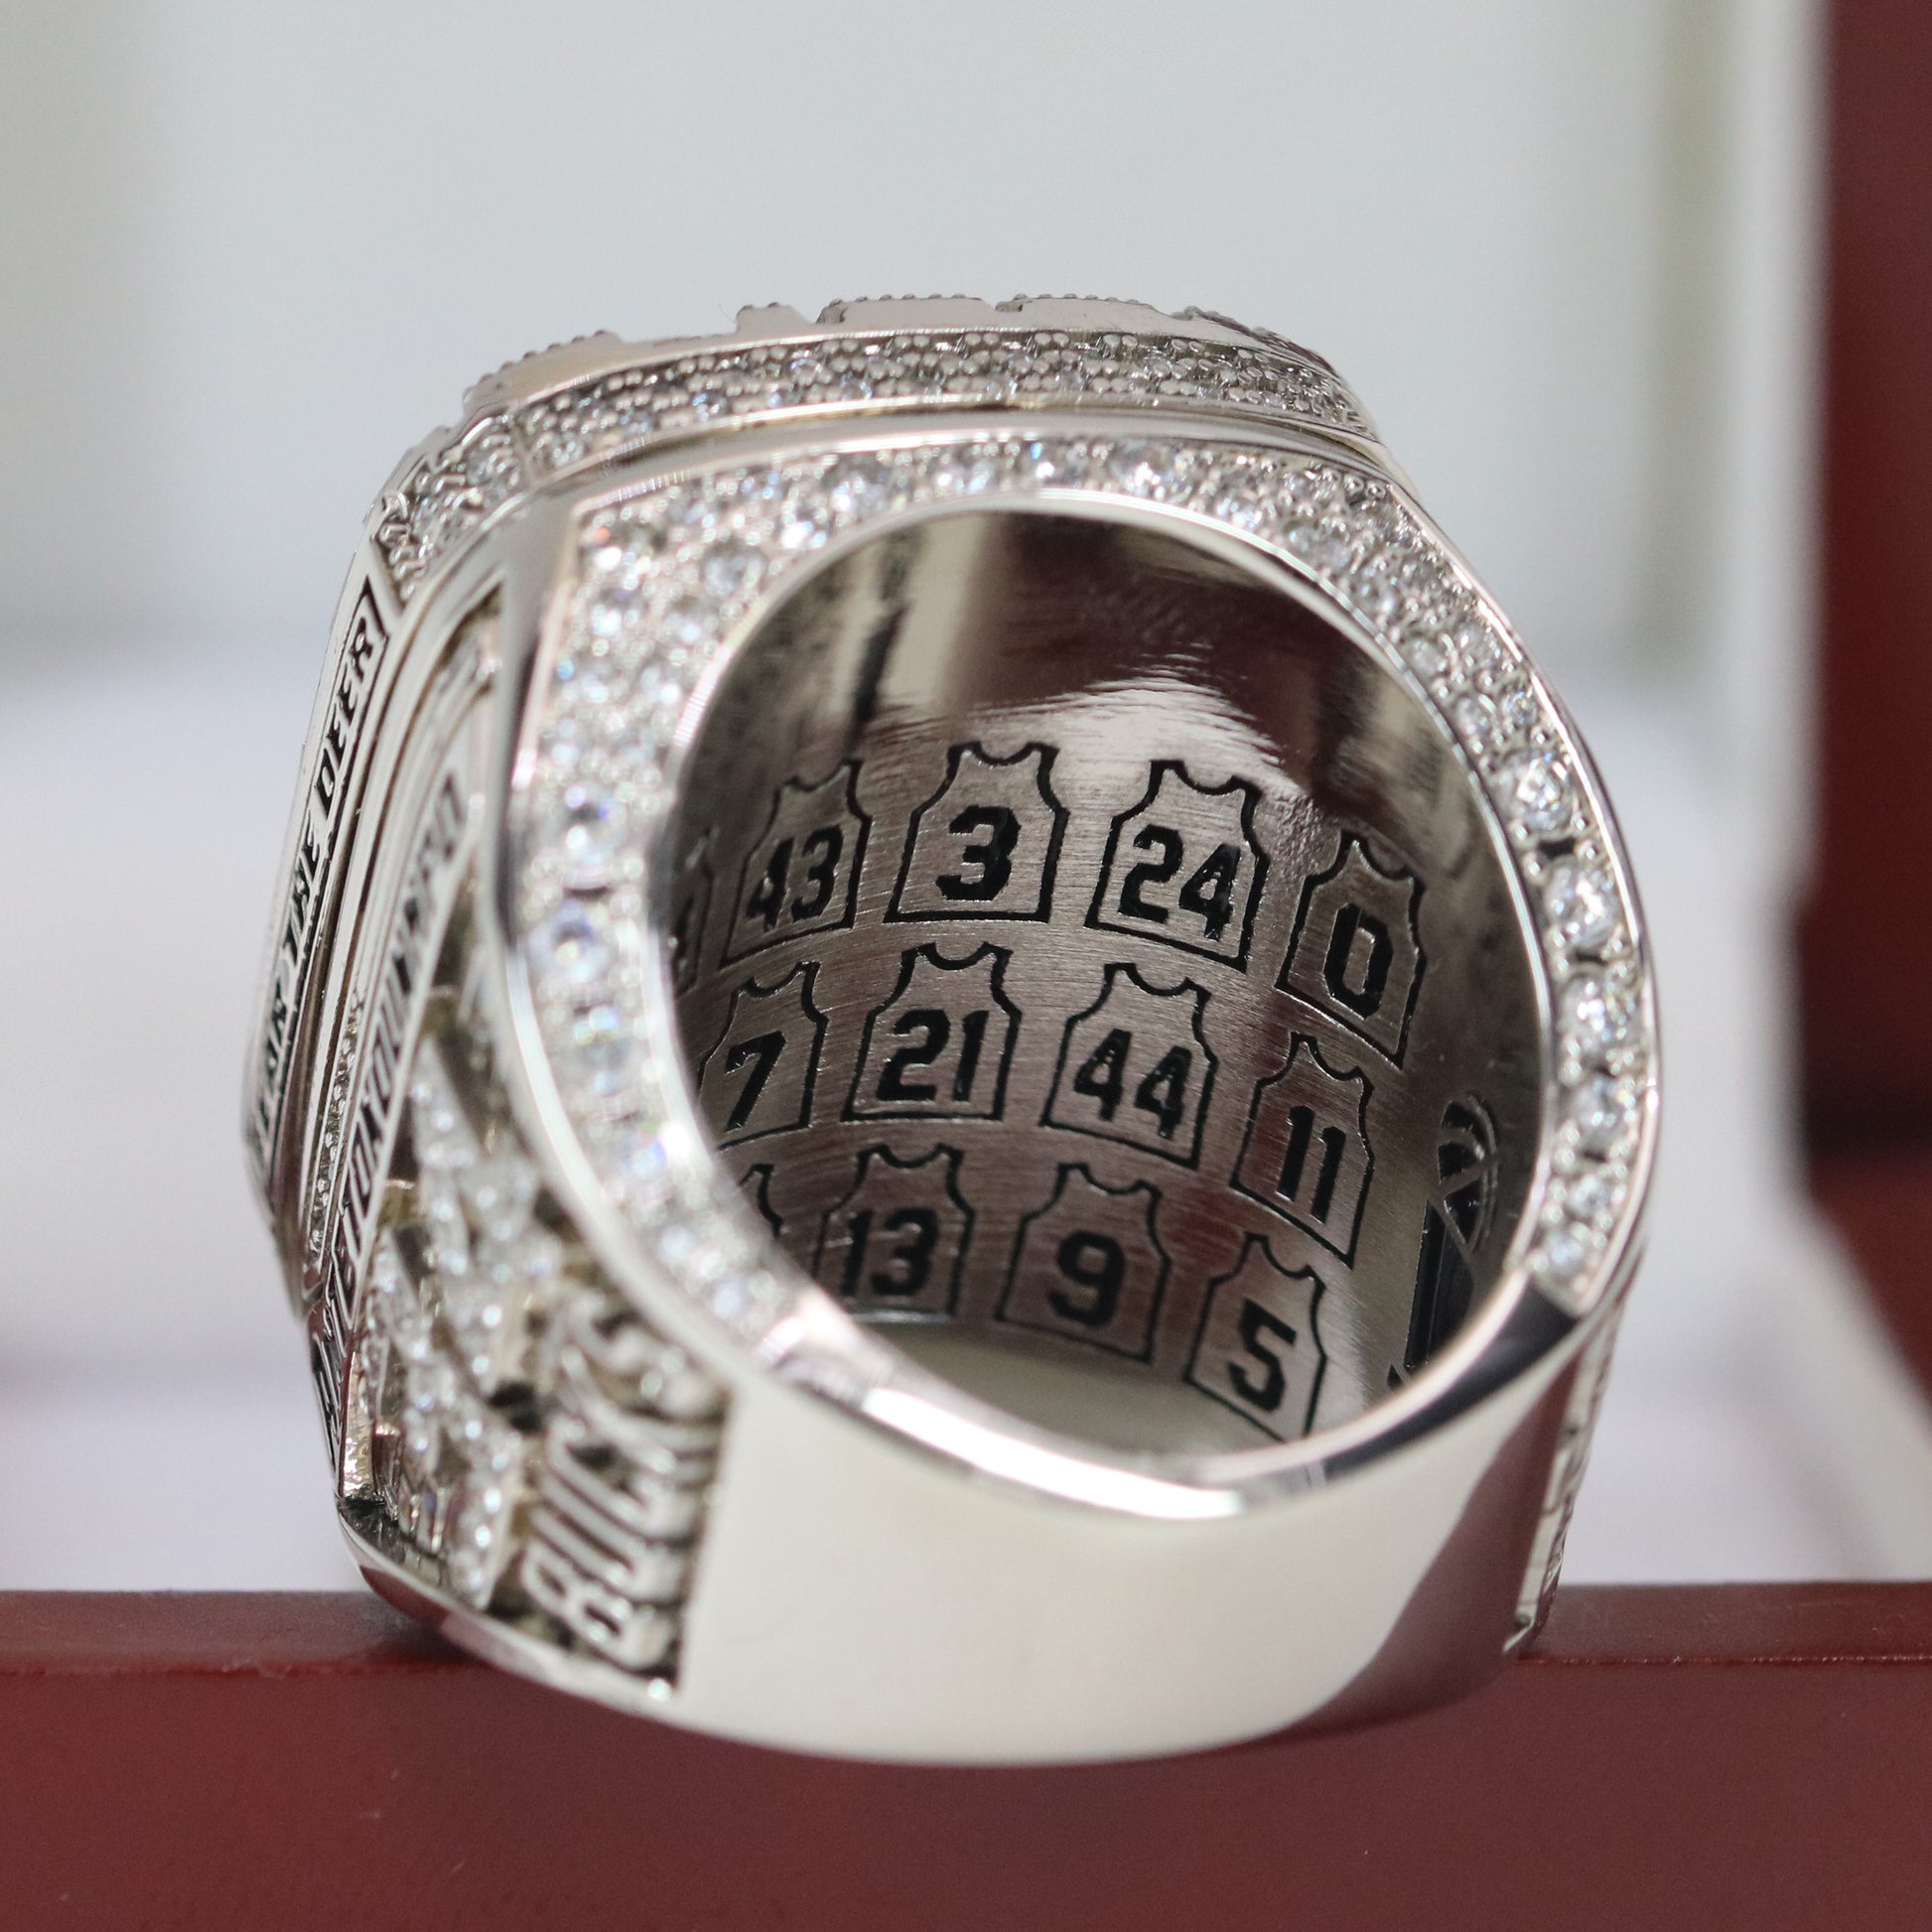 Milwaukee Bucks NBA Championship Ring Replica (2021) - Premium Series - Rings For Champs, NFL rings, MLB rings, NBA rings, NHL rings, NCAA rings, Super bowl ring, Superbowl ring, Super bowl rings, Superbowl rings, Dallas Cowboys